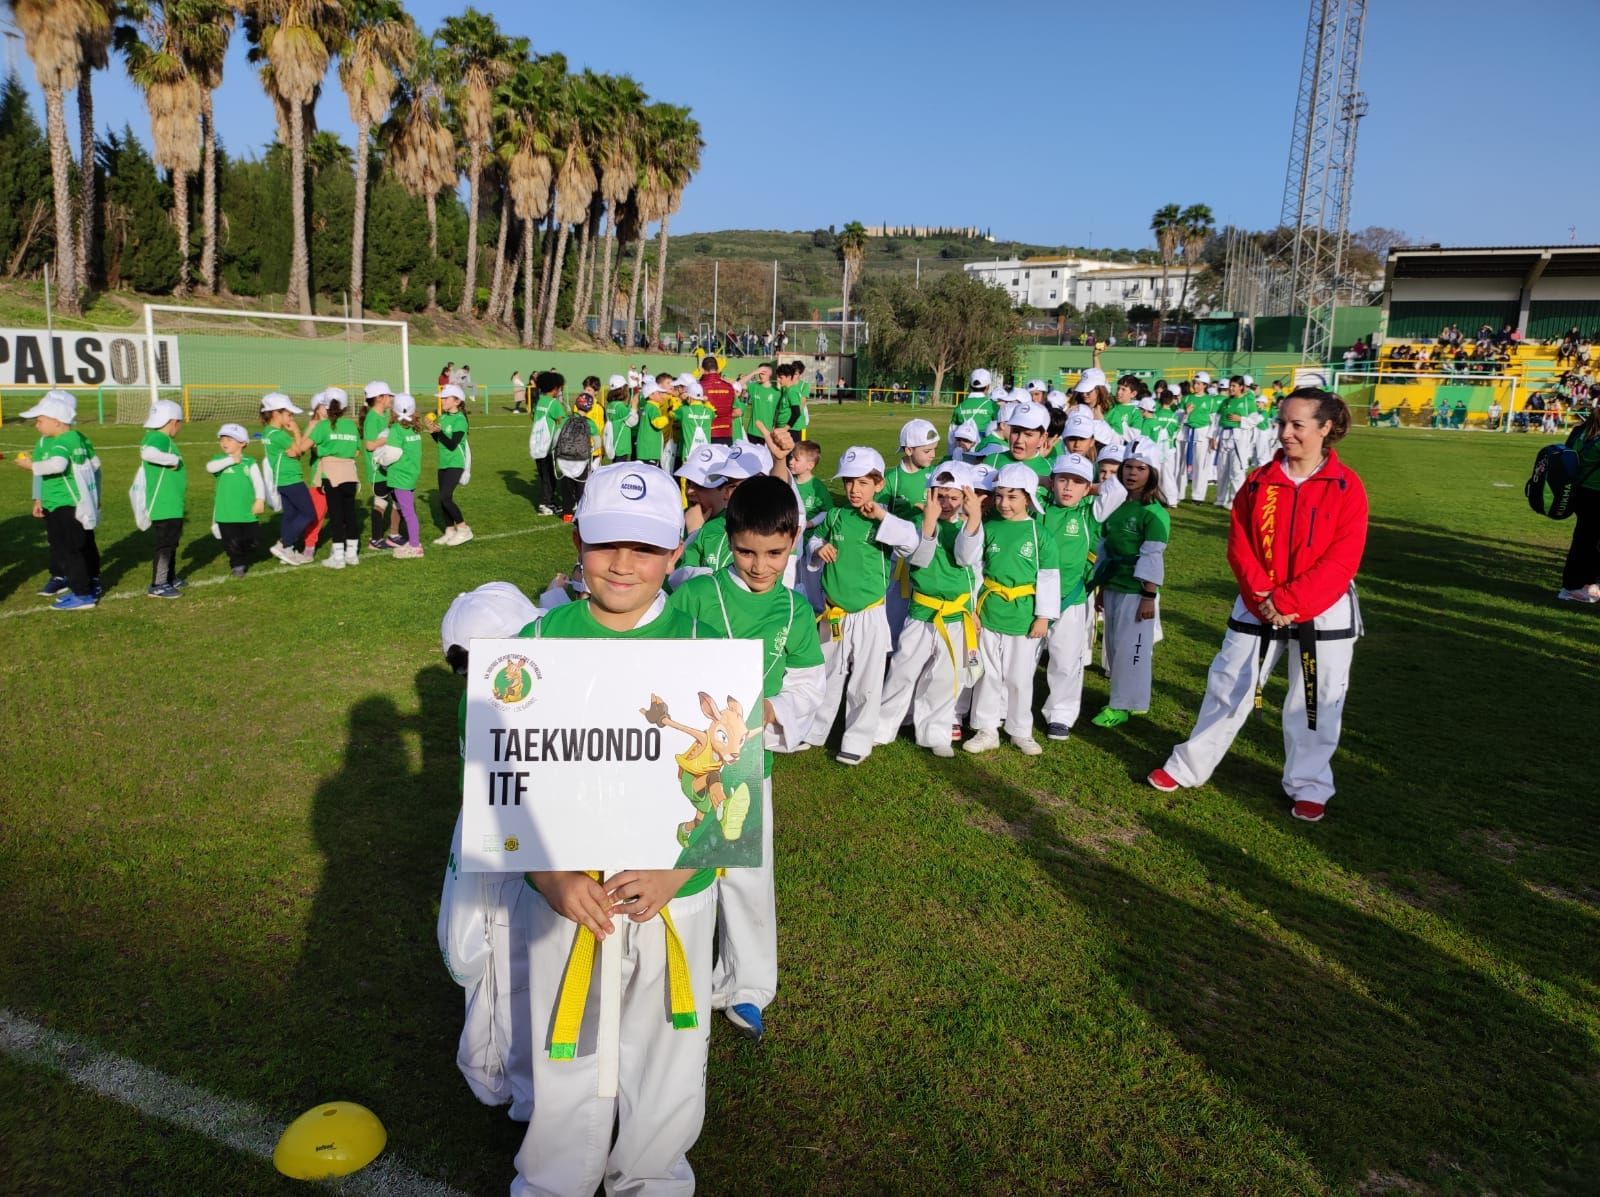 Casi un millar de niños y niñas de todas las edades se reúnen en el Complejo Deportivo de San Rafael por el Día del Deporte